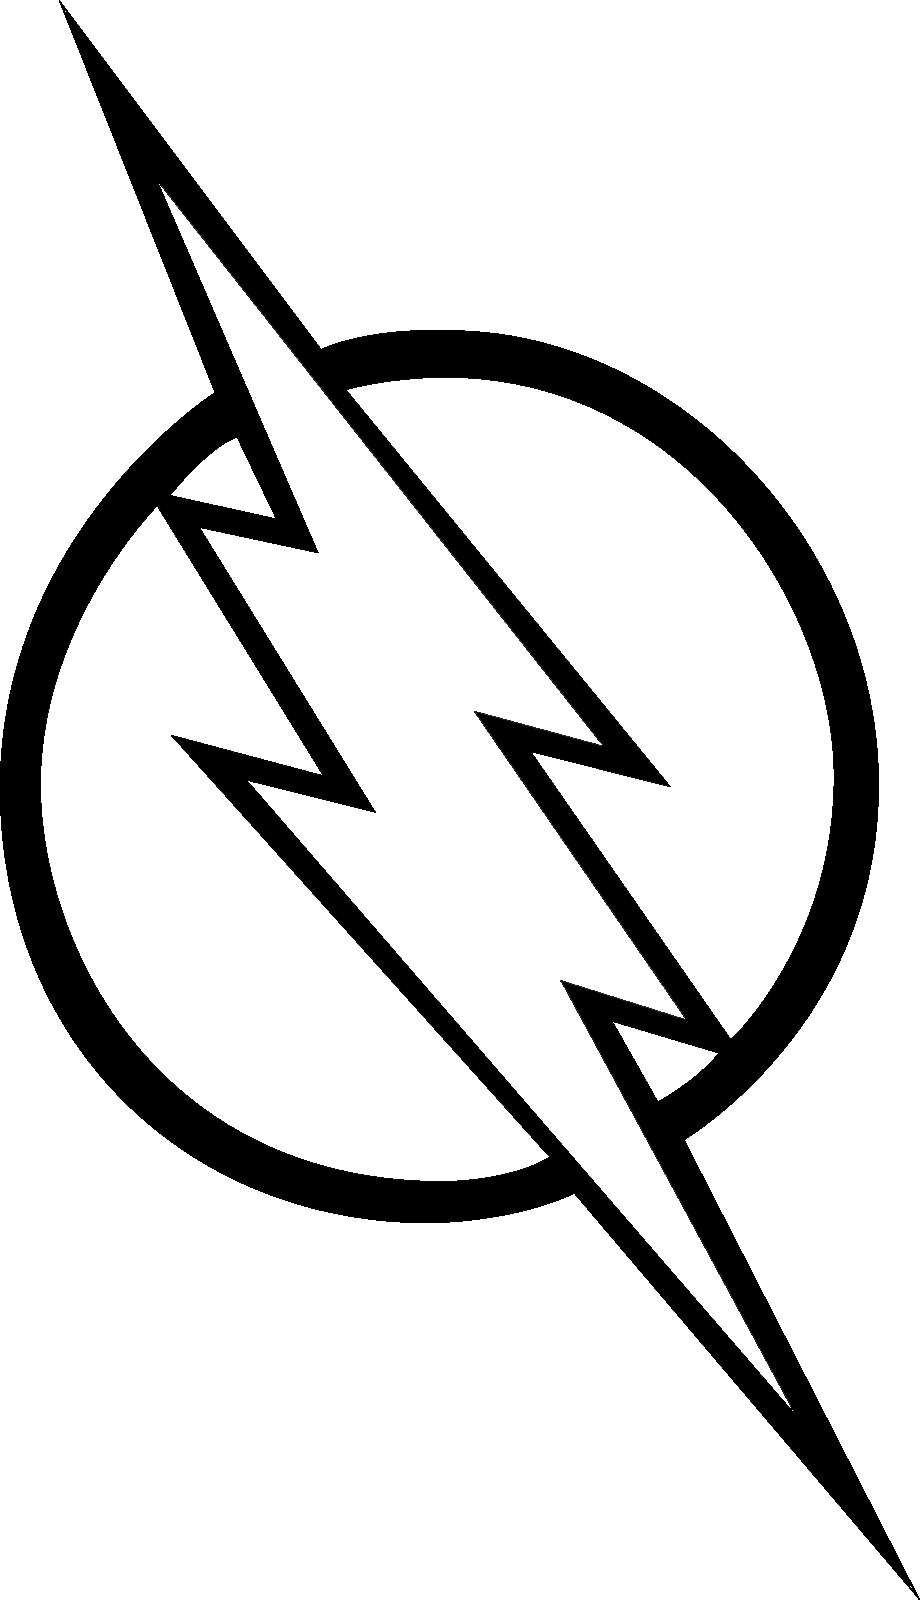 simbolo do the flash